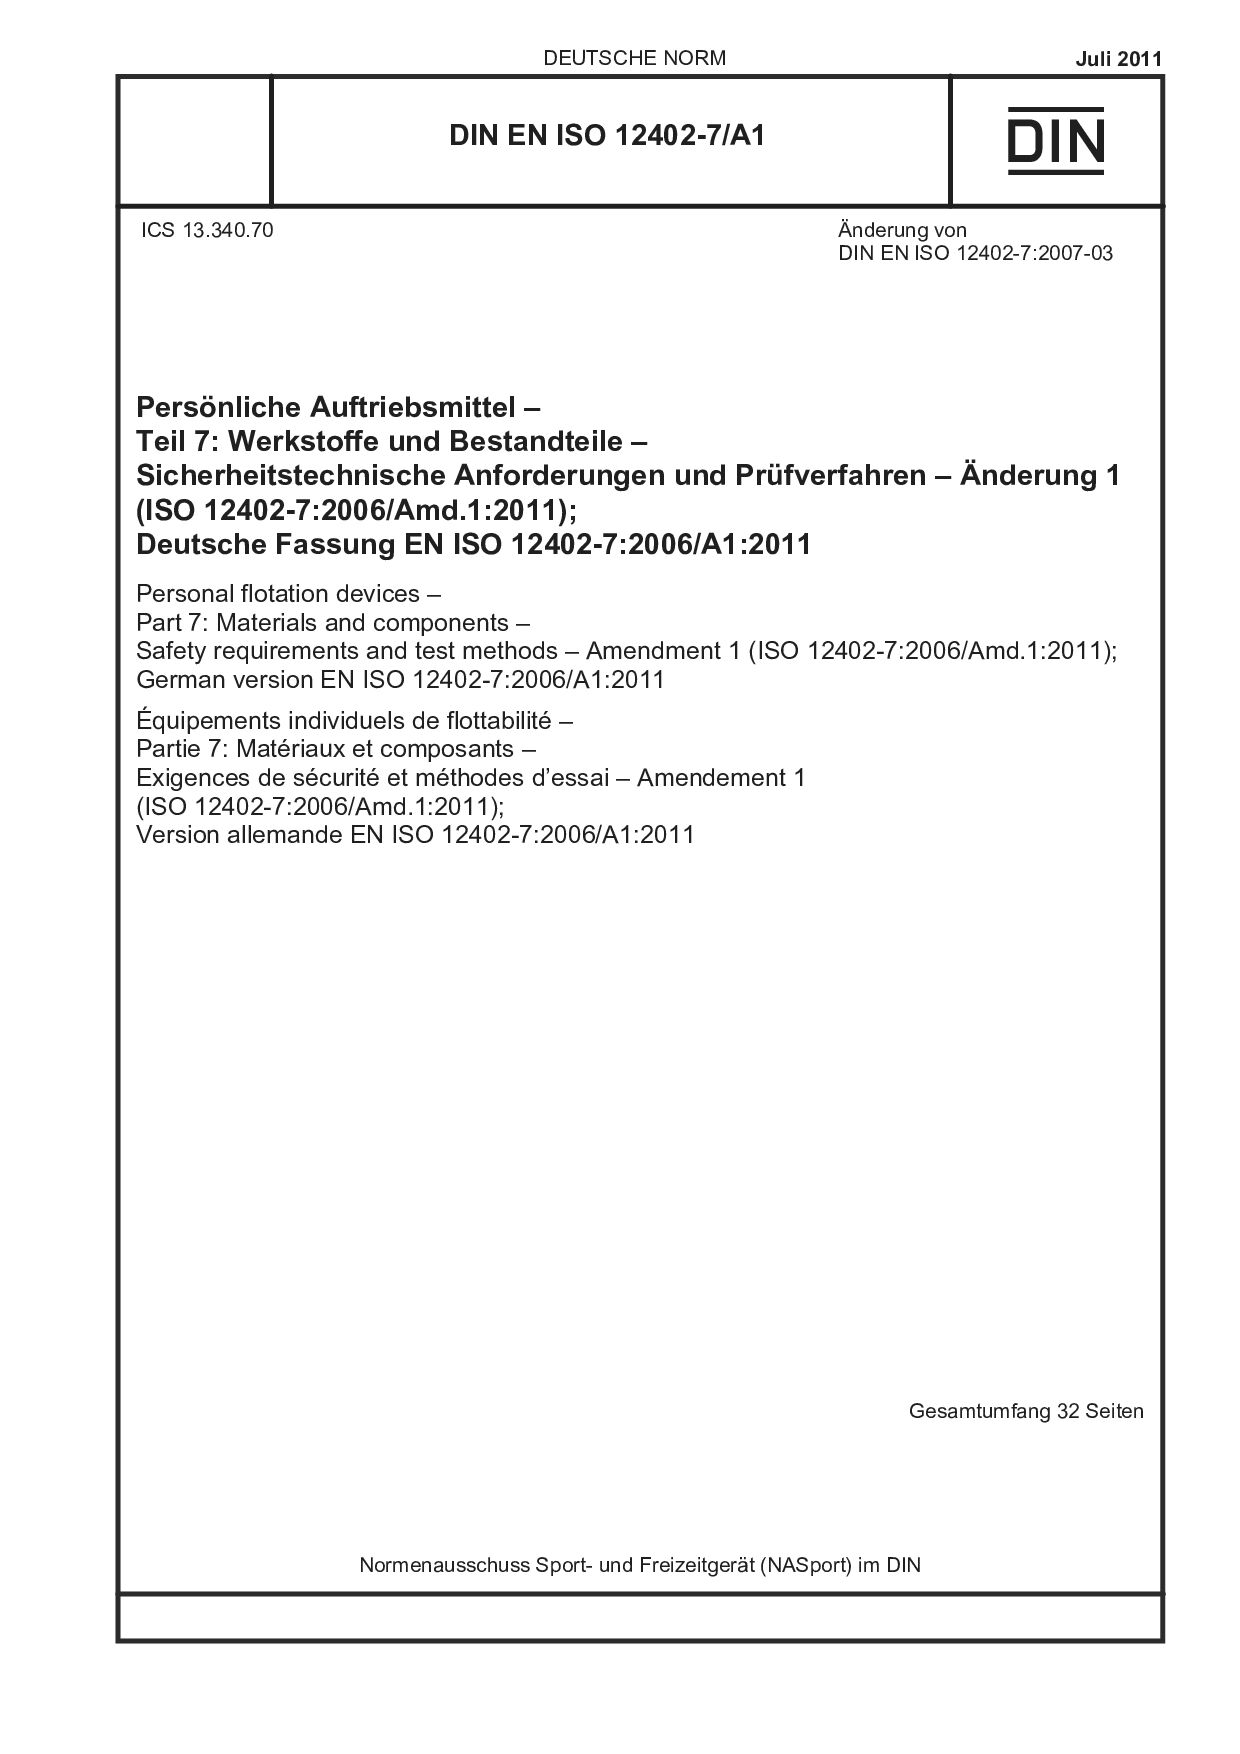 DIN EN ISO 12402-7/A1:2011封面图